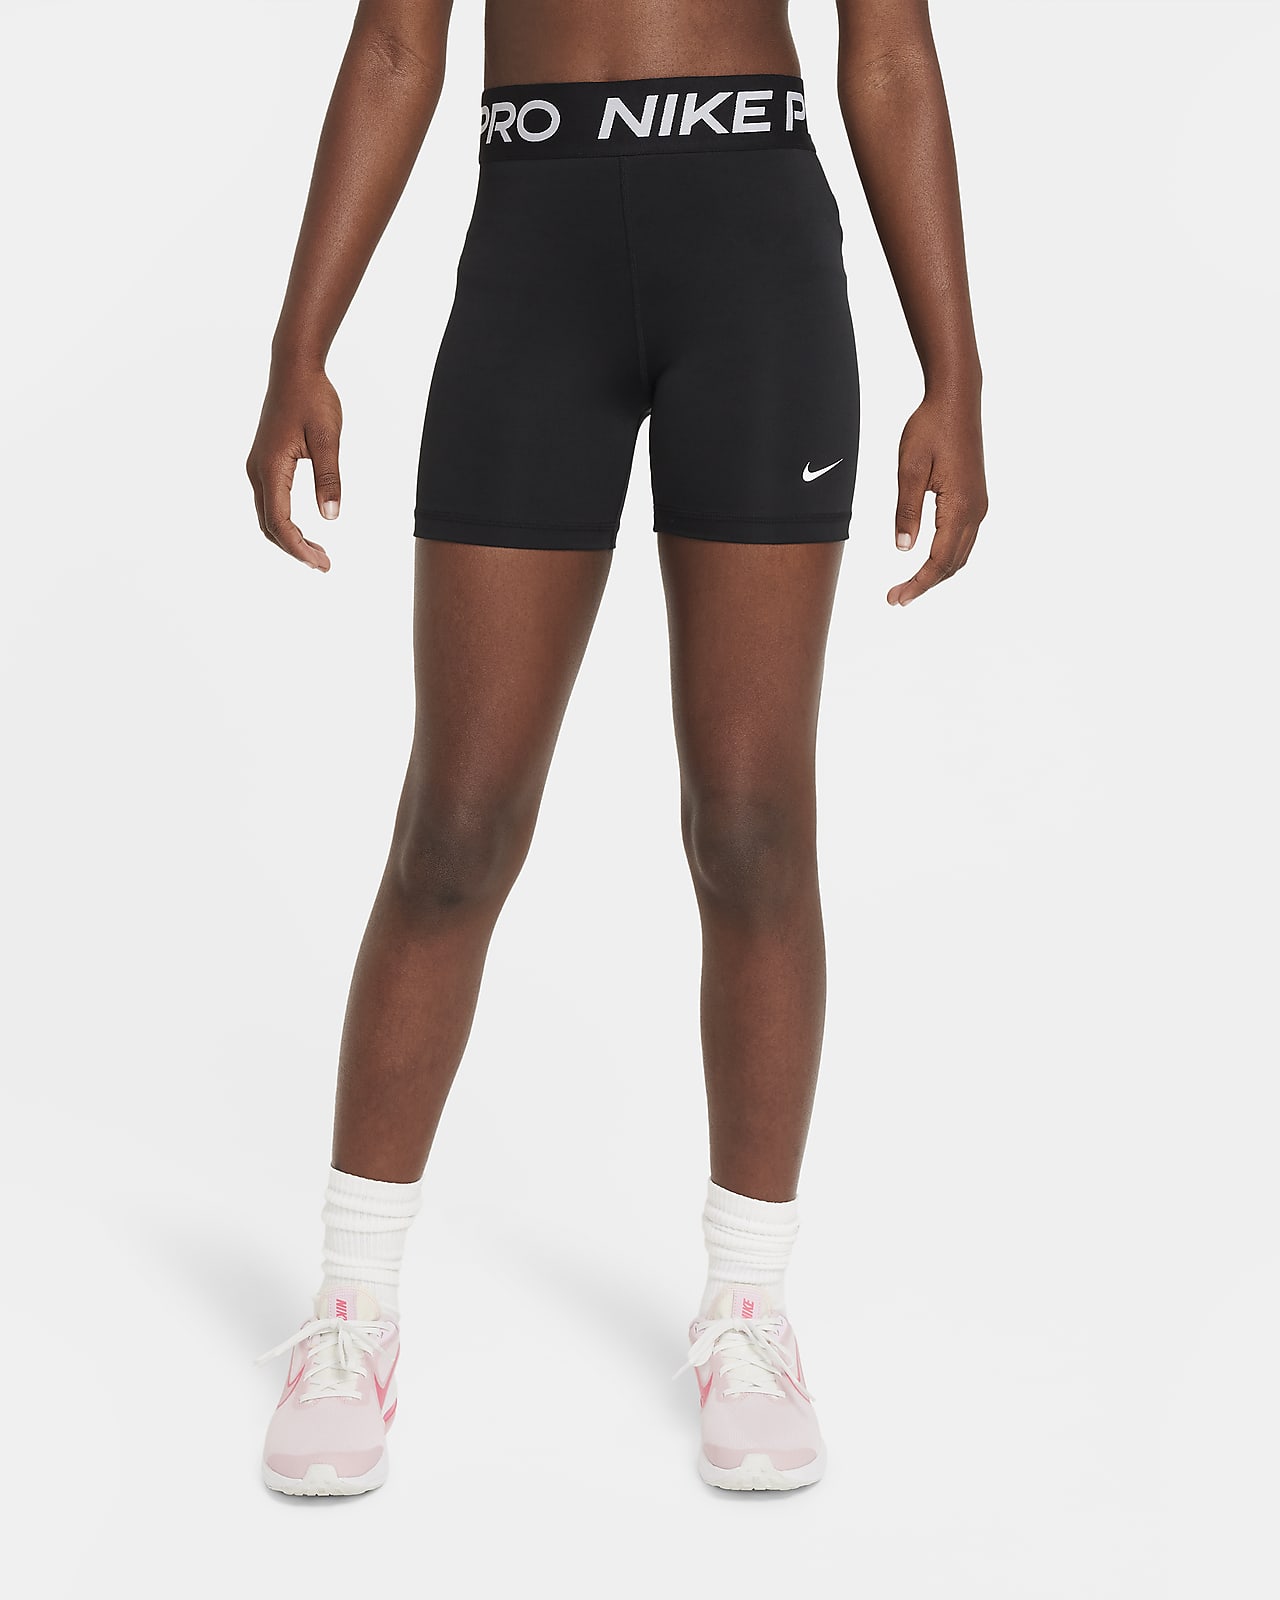 Nike corto de 8 cm - Niña. Nike ES